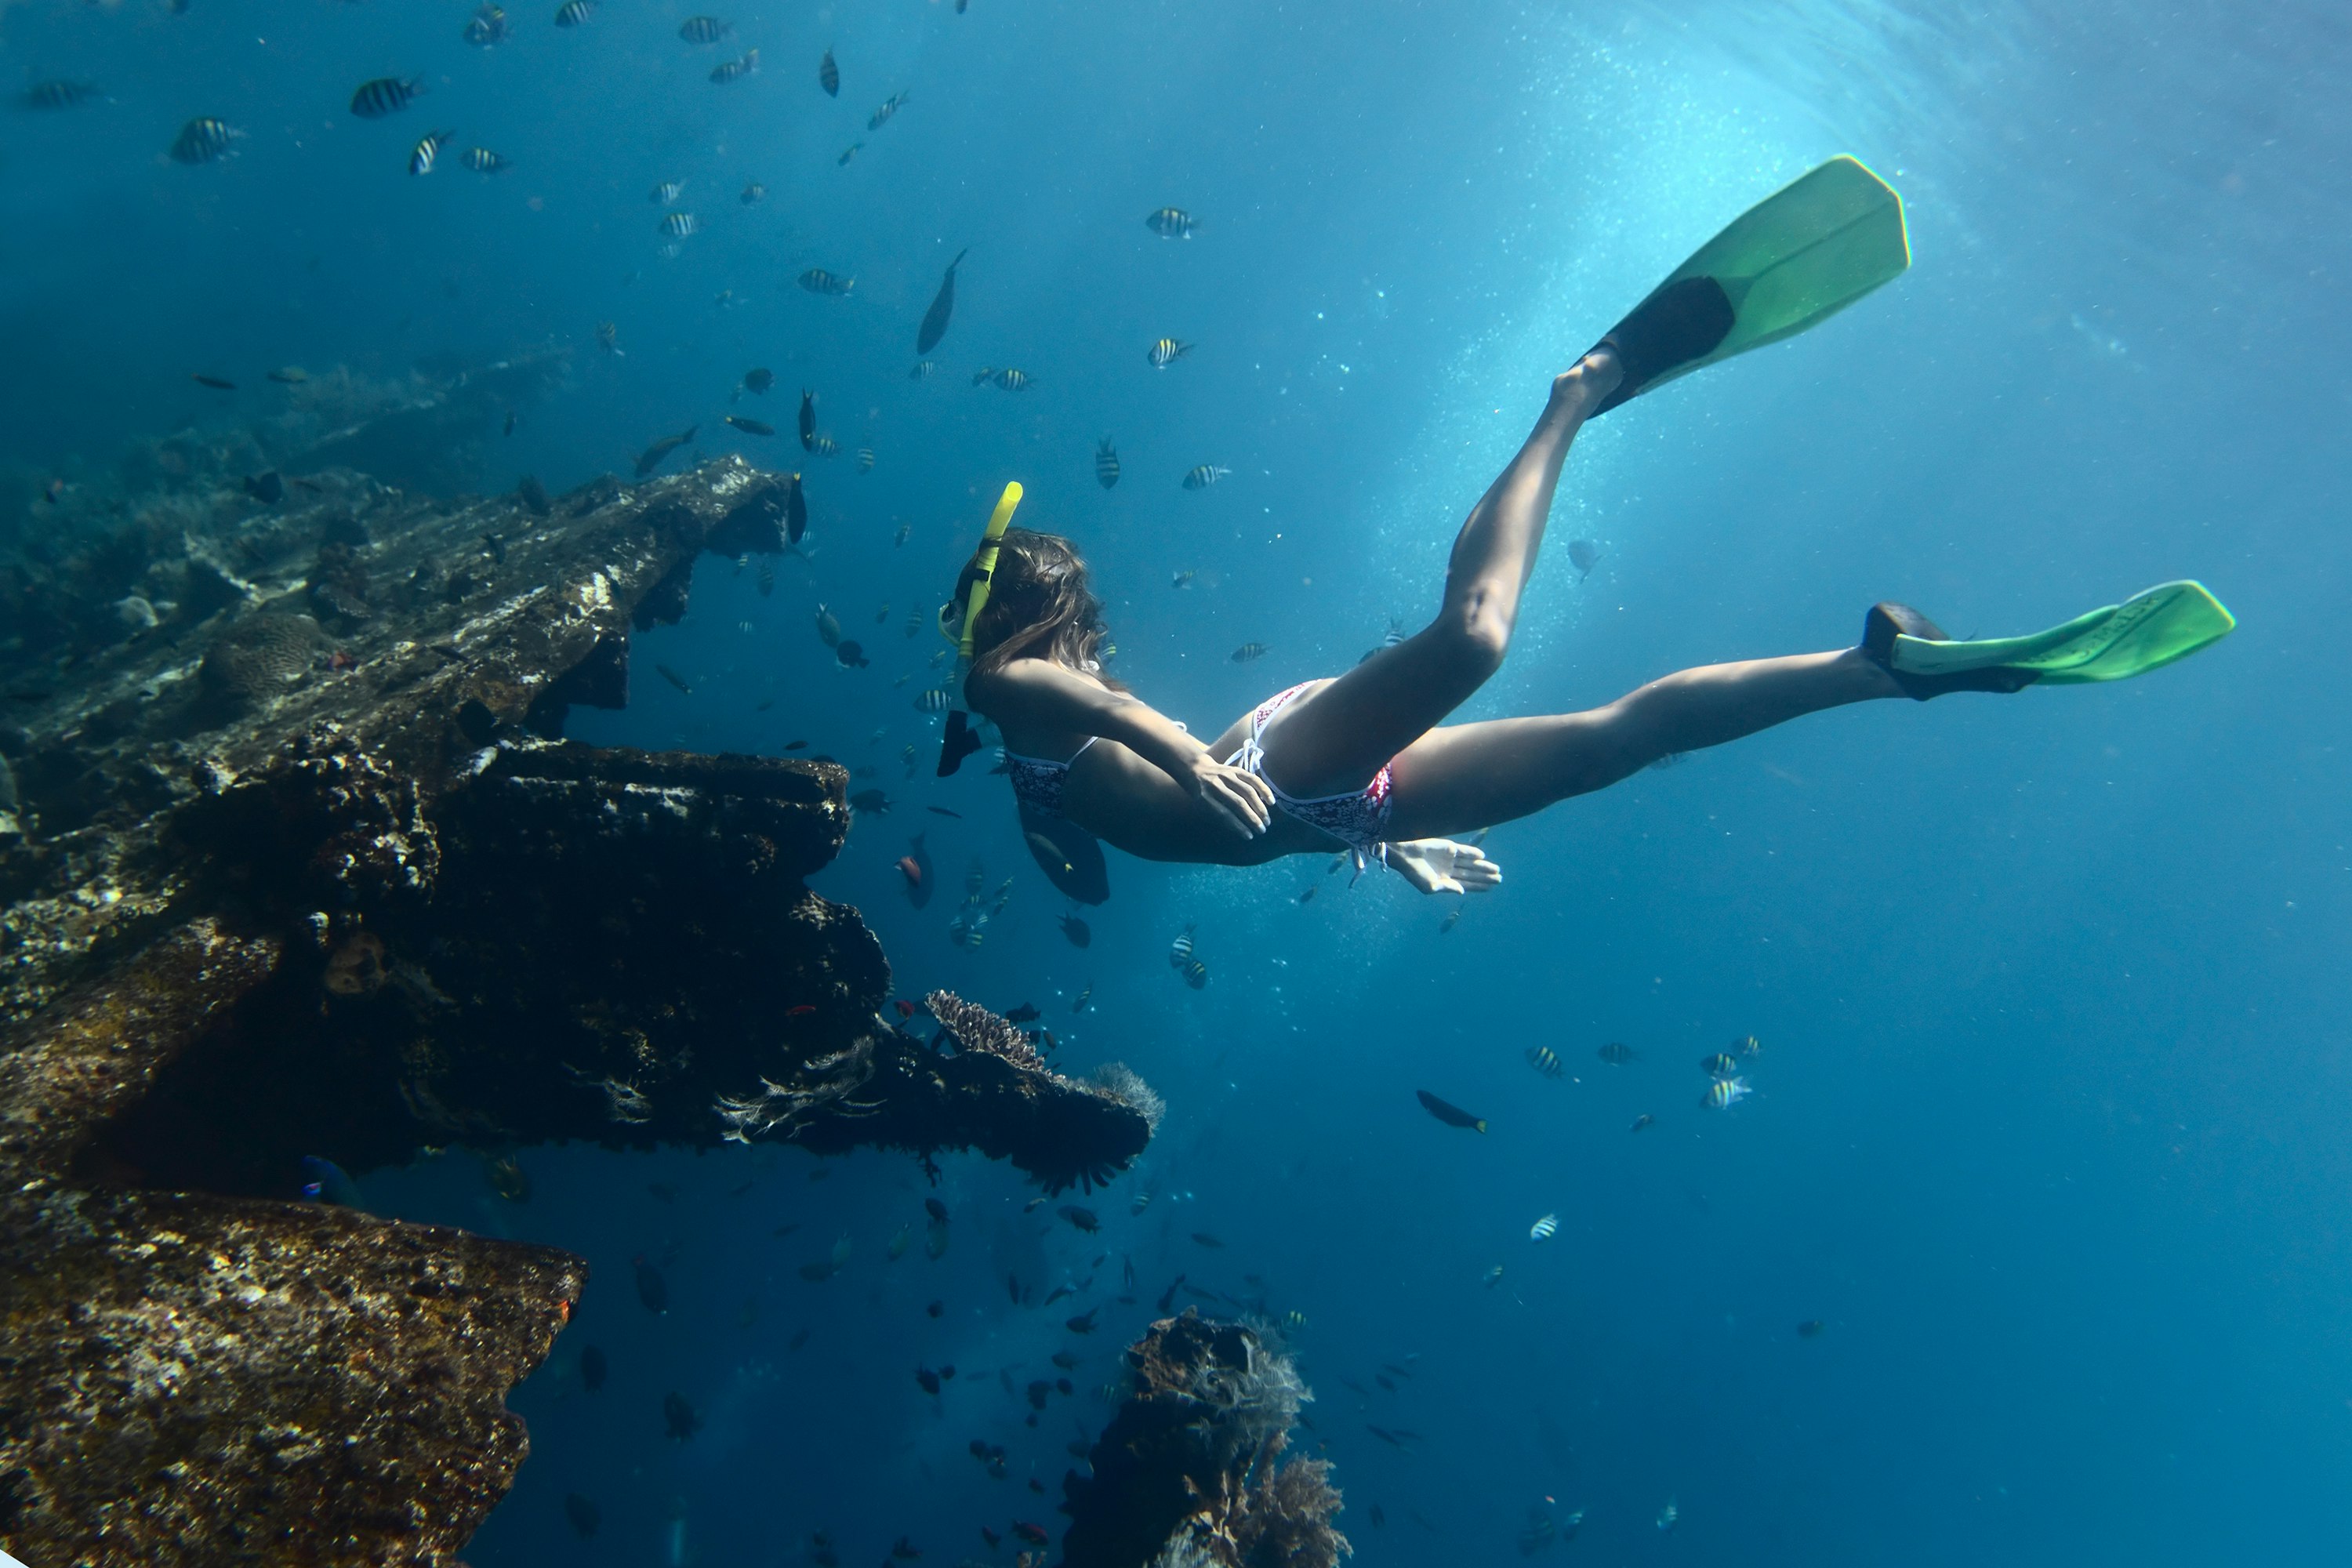 Bir batığın yakınında şnorkelle yüzerken, dalış kıyafeti veya en azından UW güneş koruması gibi bazı vücut korumaları kullanmak iyi bir fikirdir. 